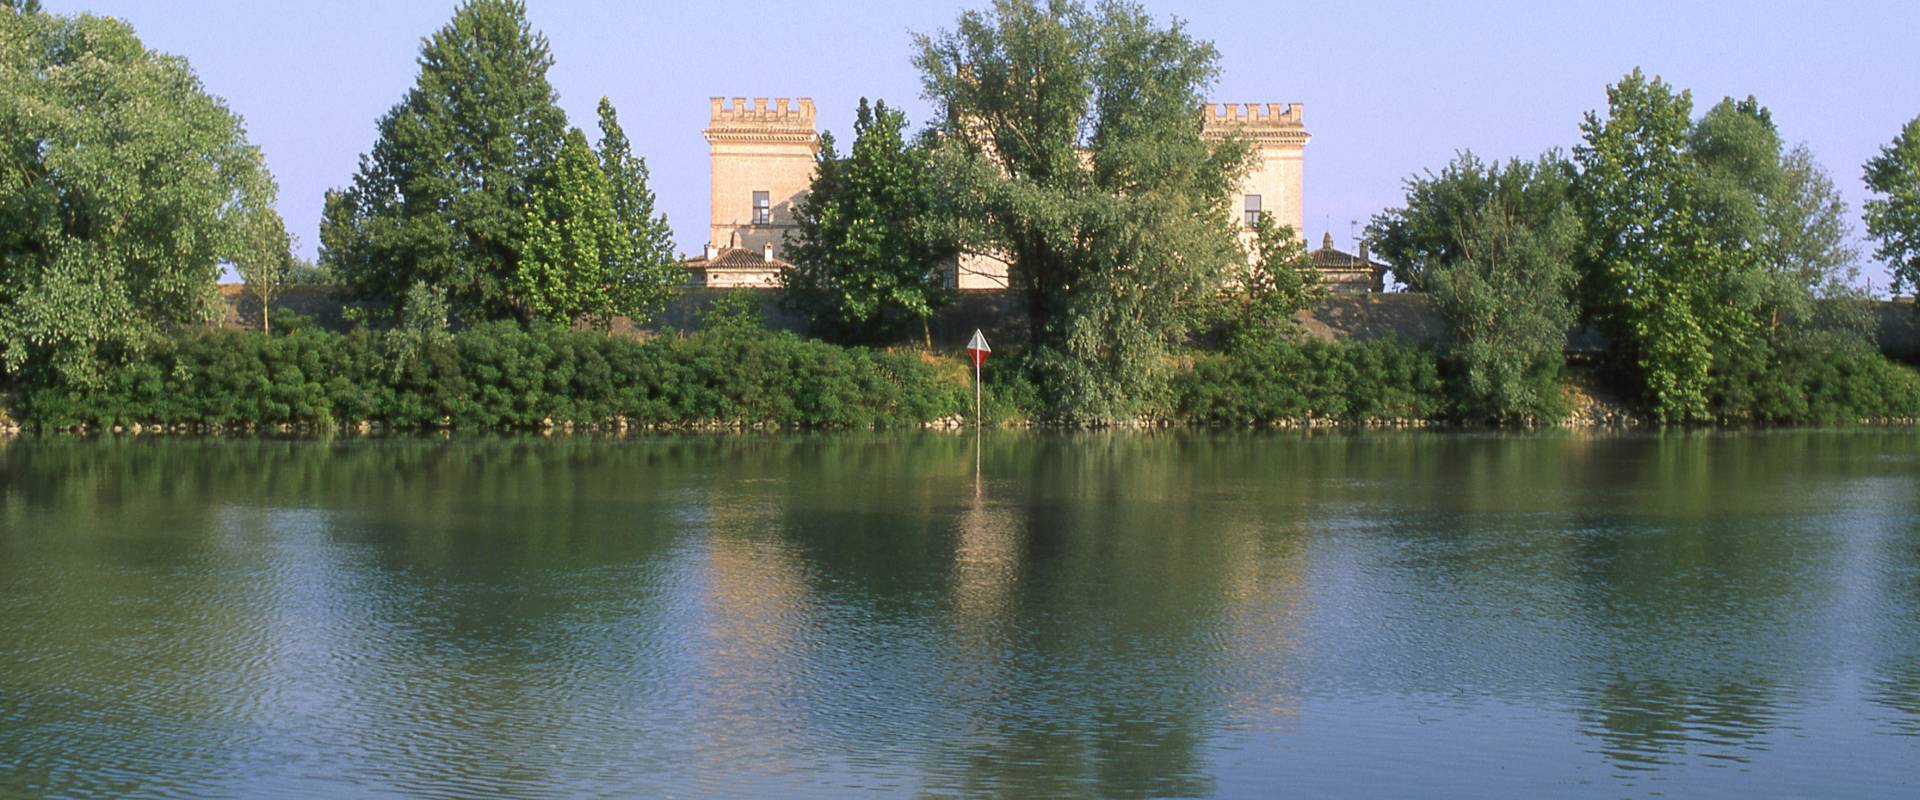 castello estense visto dal fiume foto di zappaterra